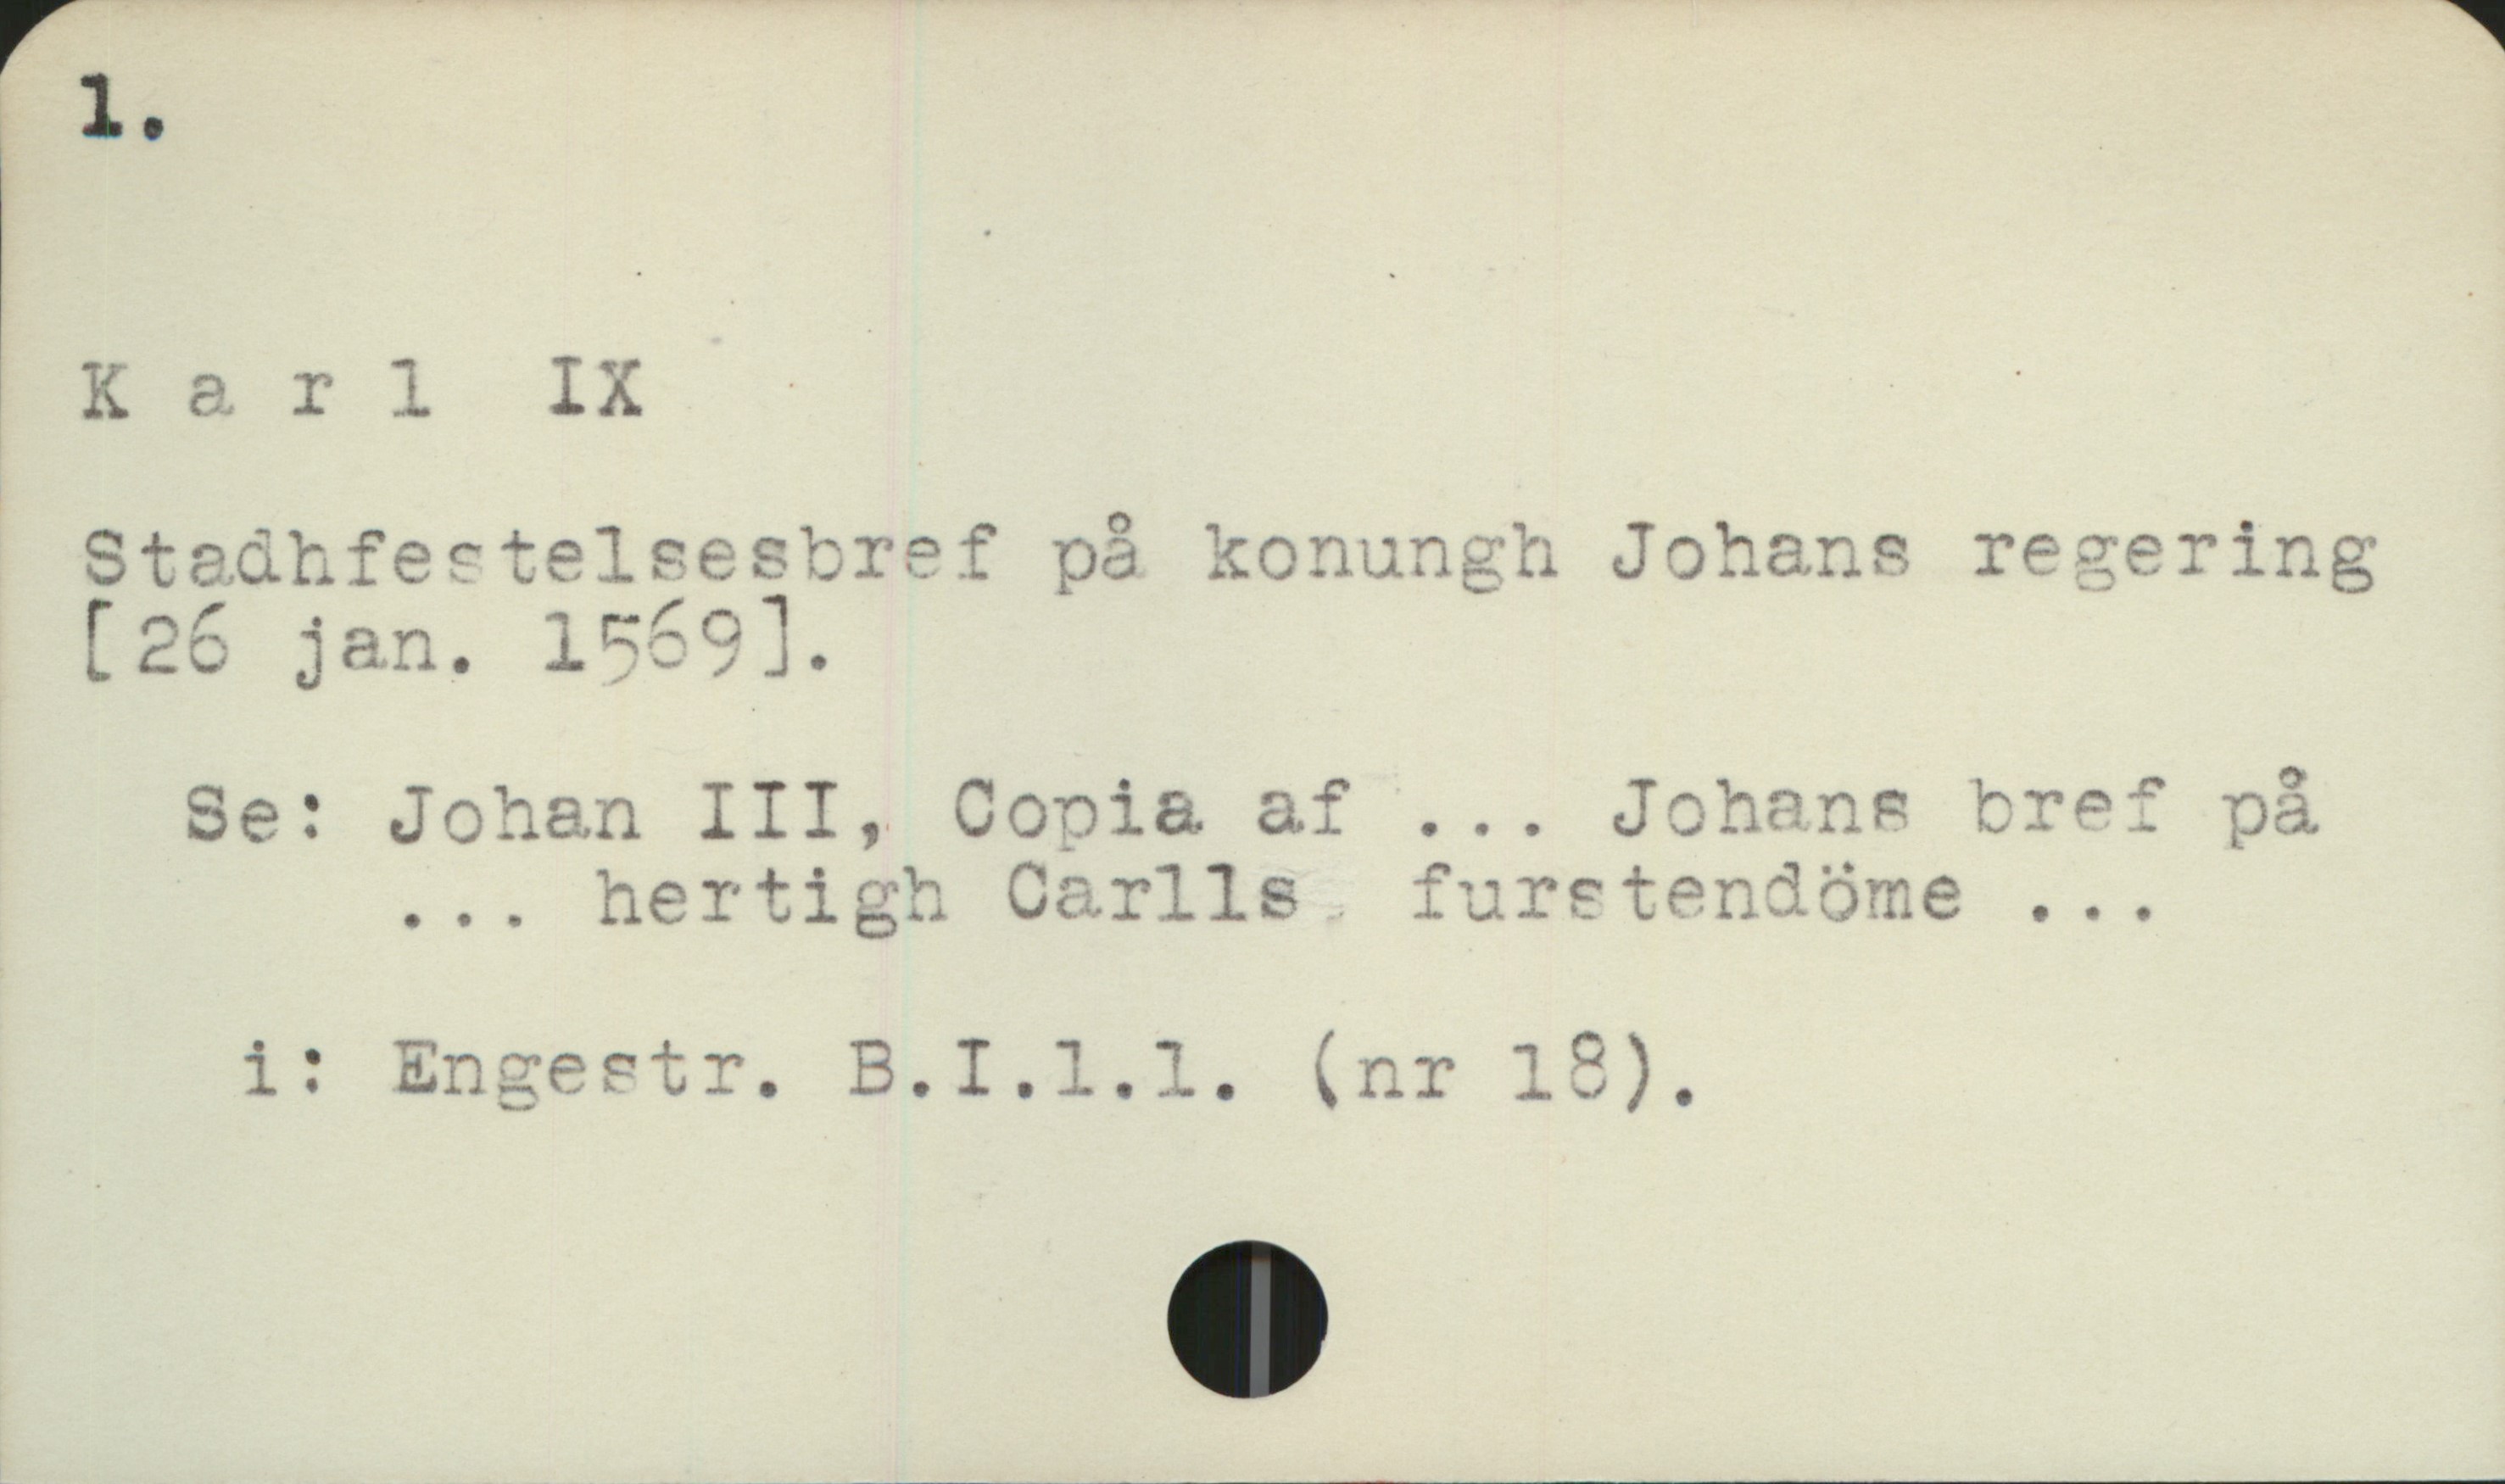  1. &
Kerl IX -/ '
Stsätfectelsestref på konungh Johans rezering
[26 jan. 159].
Se: Johan III, Conia af ... Johans bref på
... hertigh Carlls furetendöme ...
i: Engestr. B.I.l.l. (nr 12),

